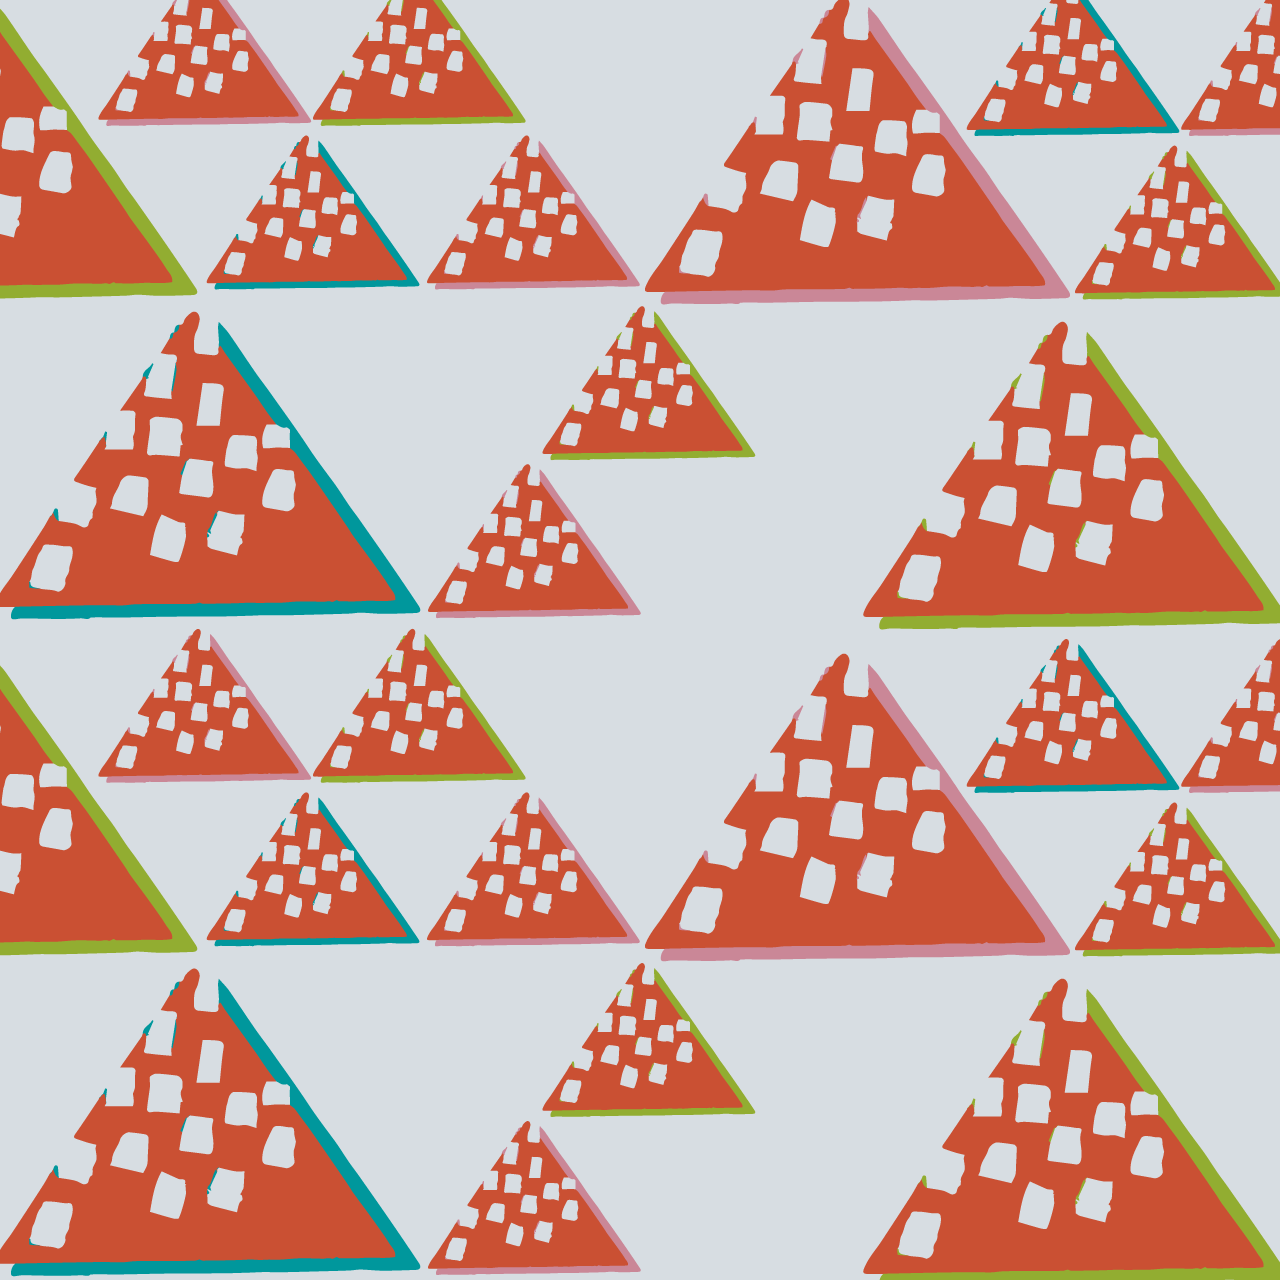 薄いグレーの背景にオレンジ色の三角のパターン